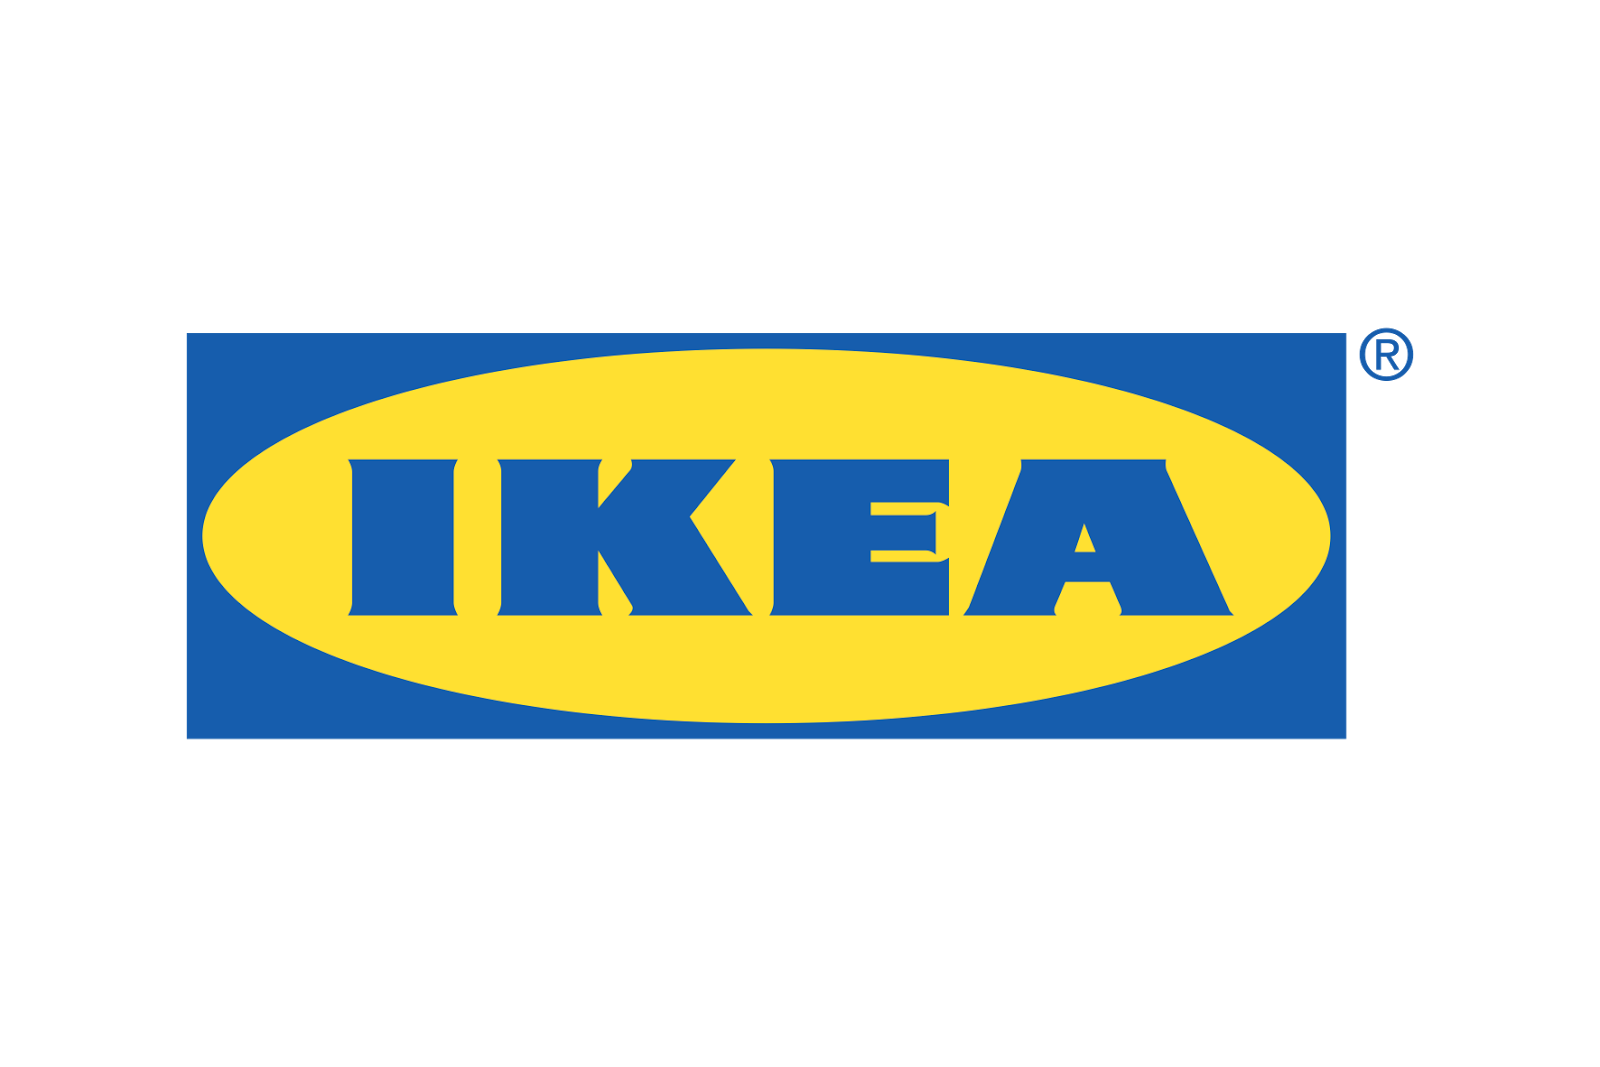 Ikea Wallclock Logo Image for Free - Free Logo Image